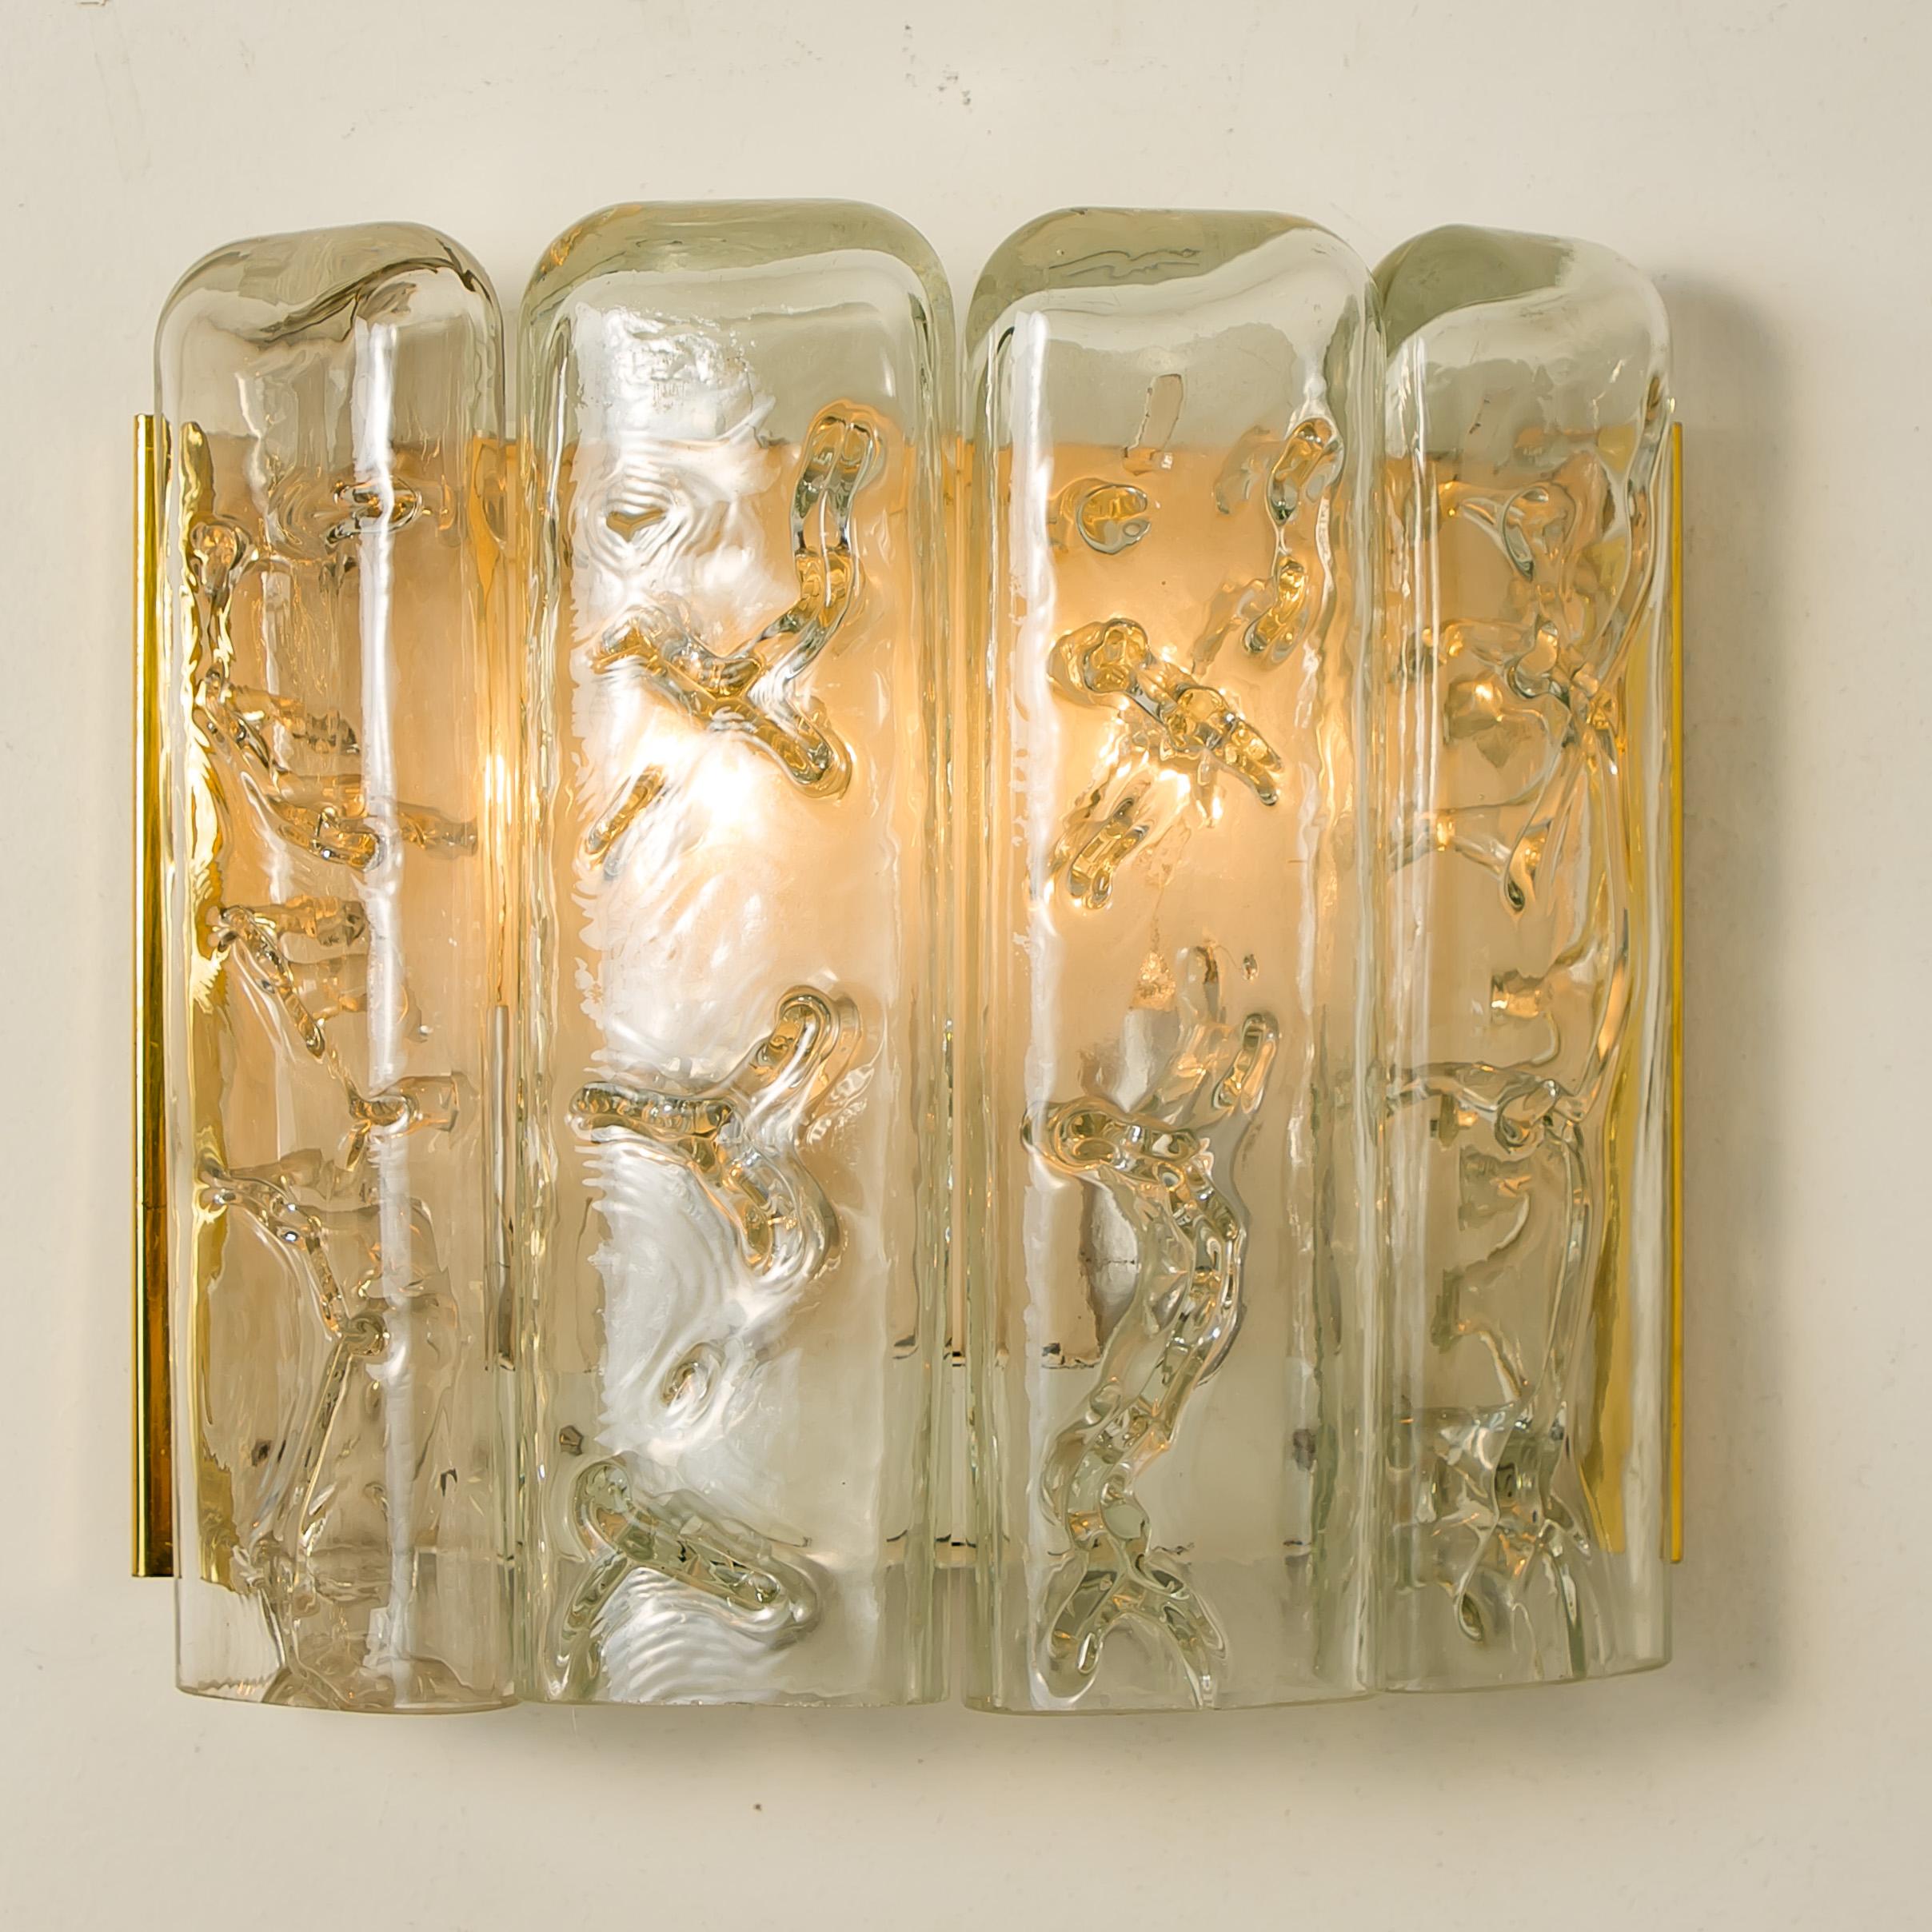 Dieses Paar Wandleuchten stammt aus den 1960er Jahren und wurde von der berühmten Firma Doria Leuchten in Deutschland entworfen. Sie bestehen aus einer Rückwand aus poliertem Messing und vier flachen Röhrenprismen aus geschmolzenem Glas, die klar